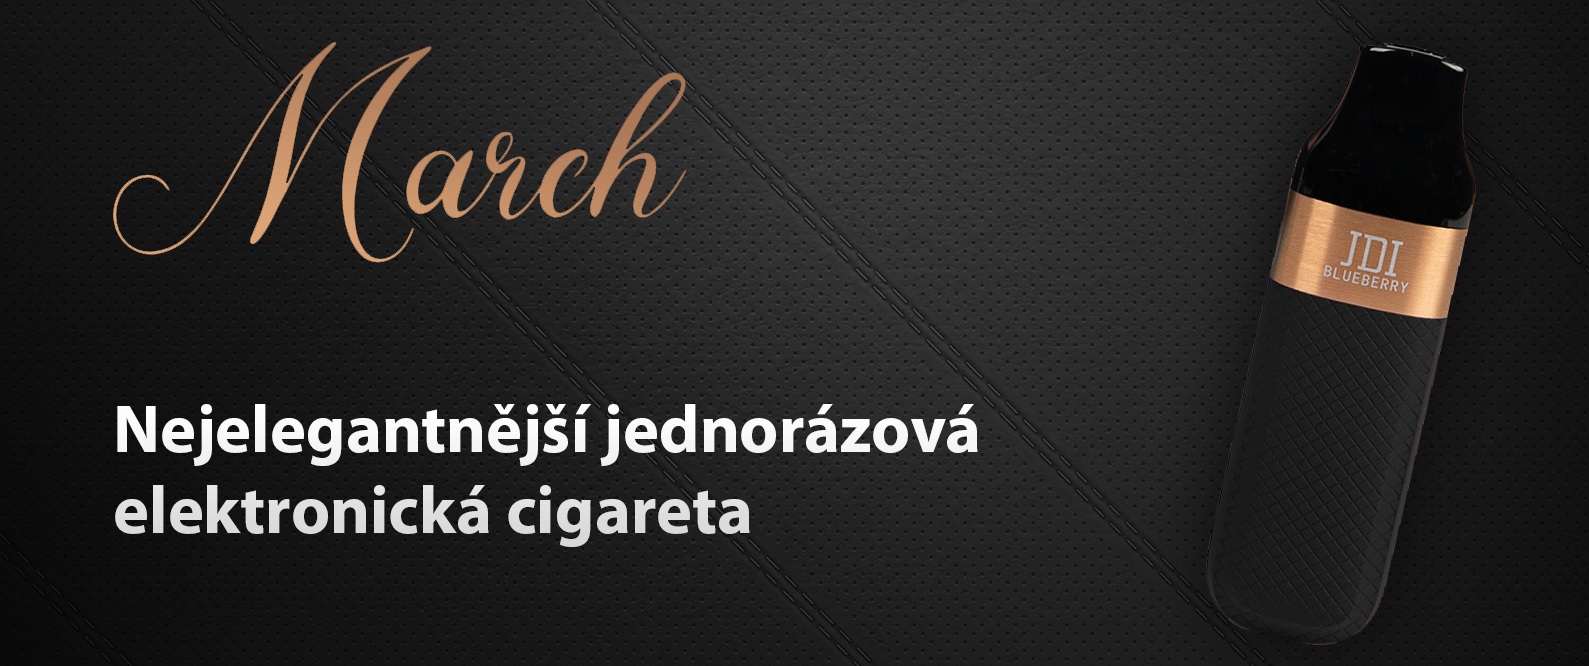 jednorazova-e-cigareta-jdi-romio-march-20mg